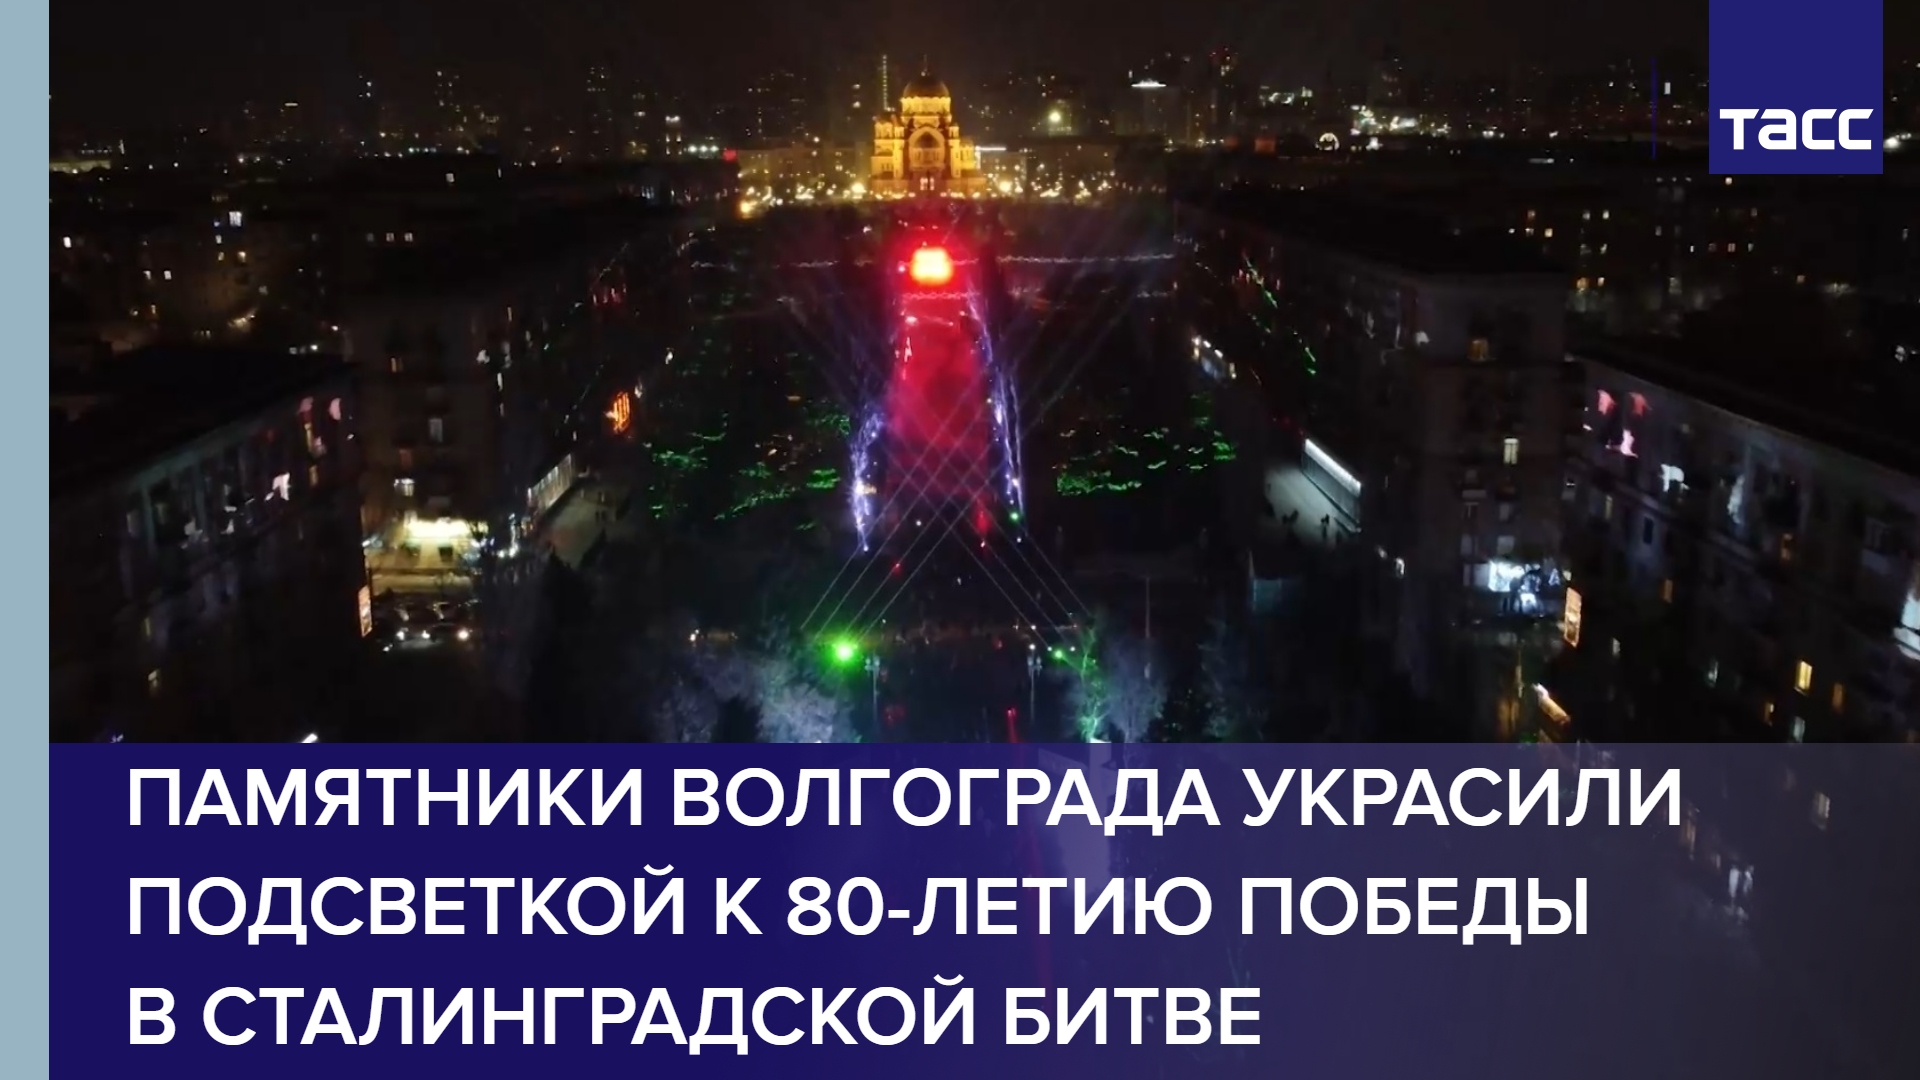 Памятники Волгограда украсили подсветкой к 80-летию победы в Сталинградской битве